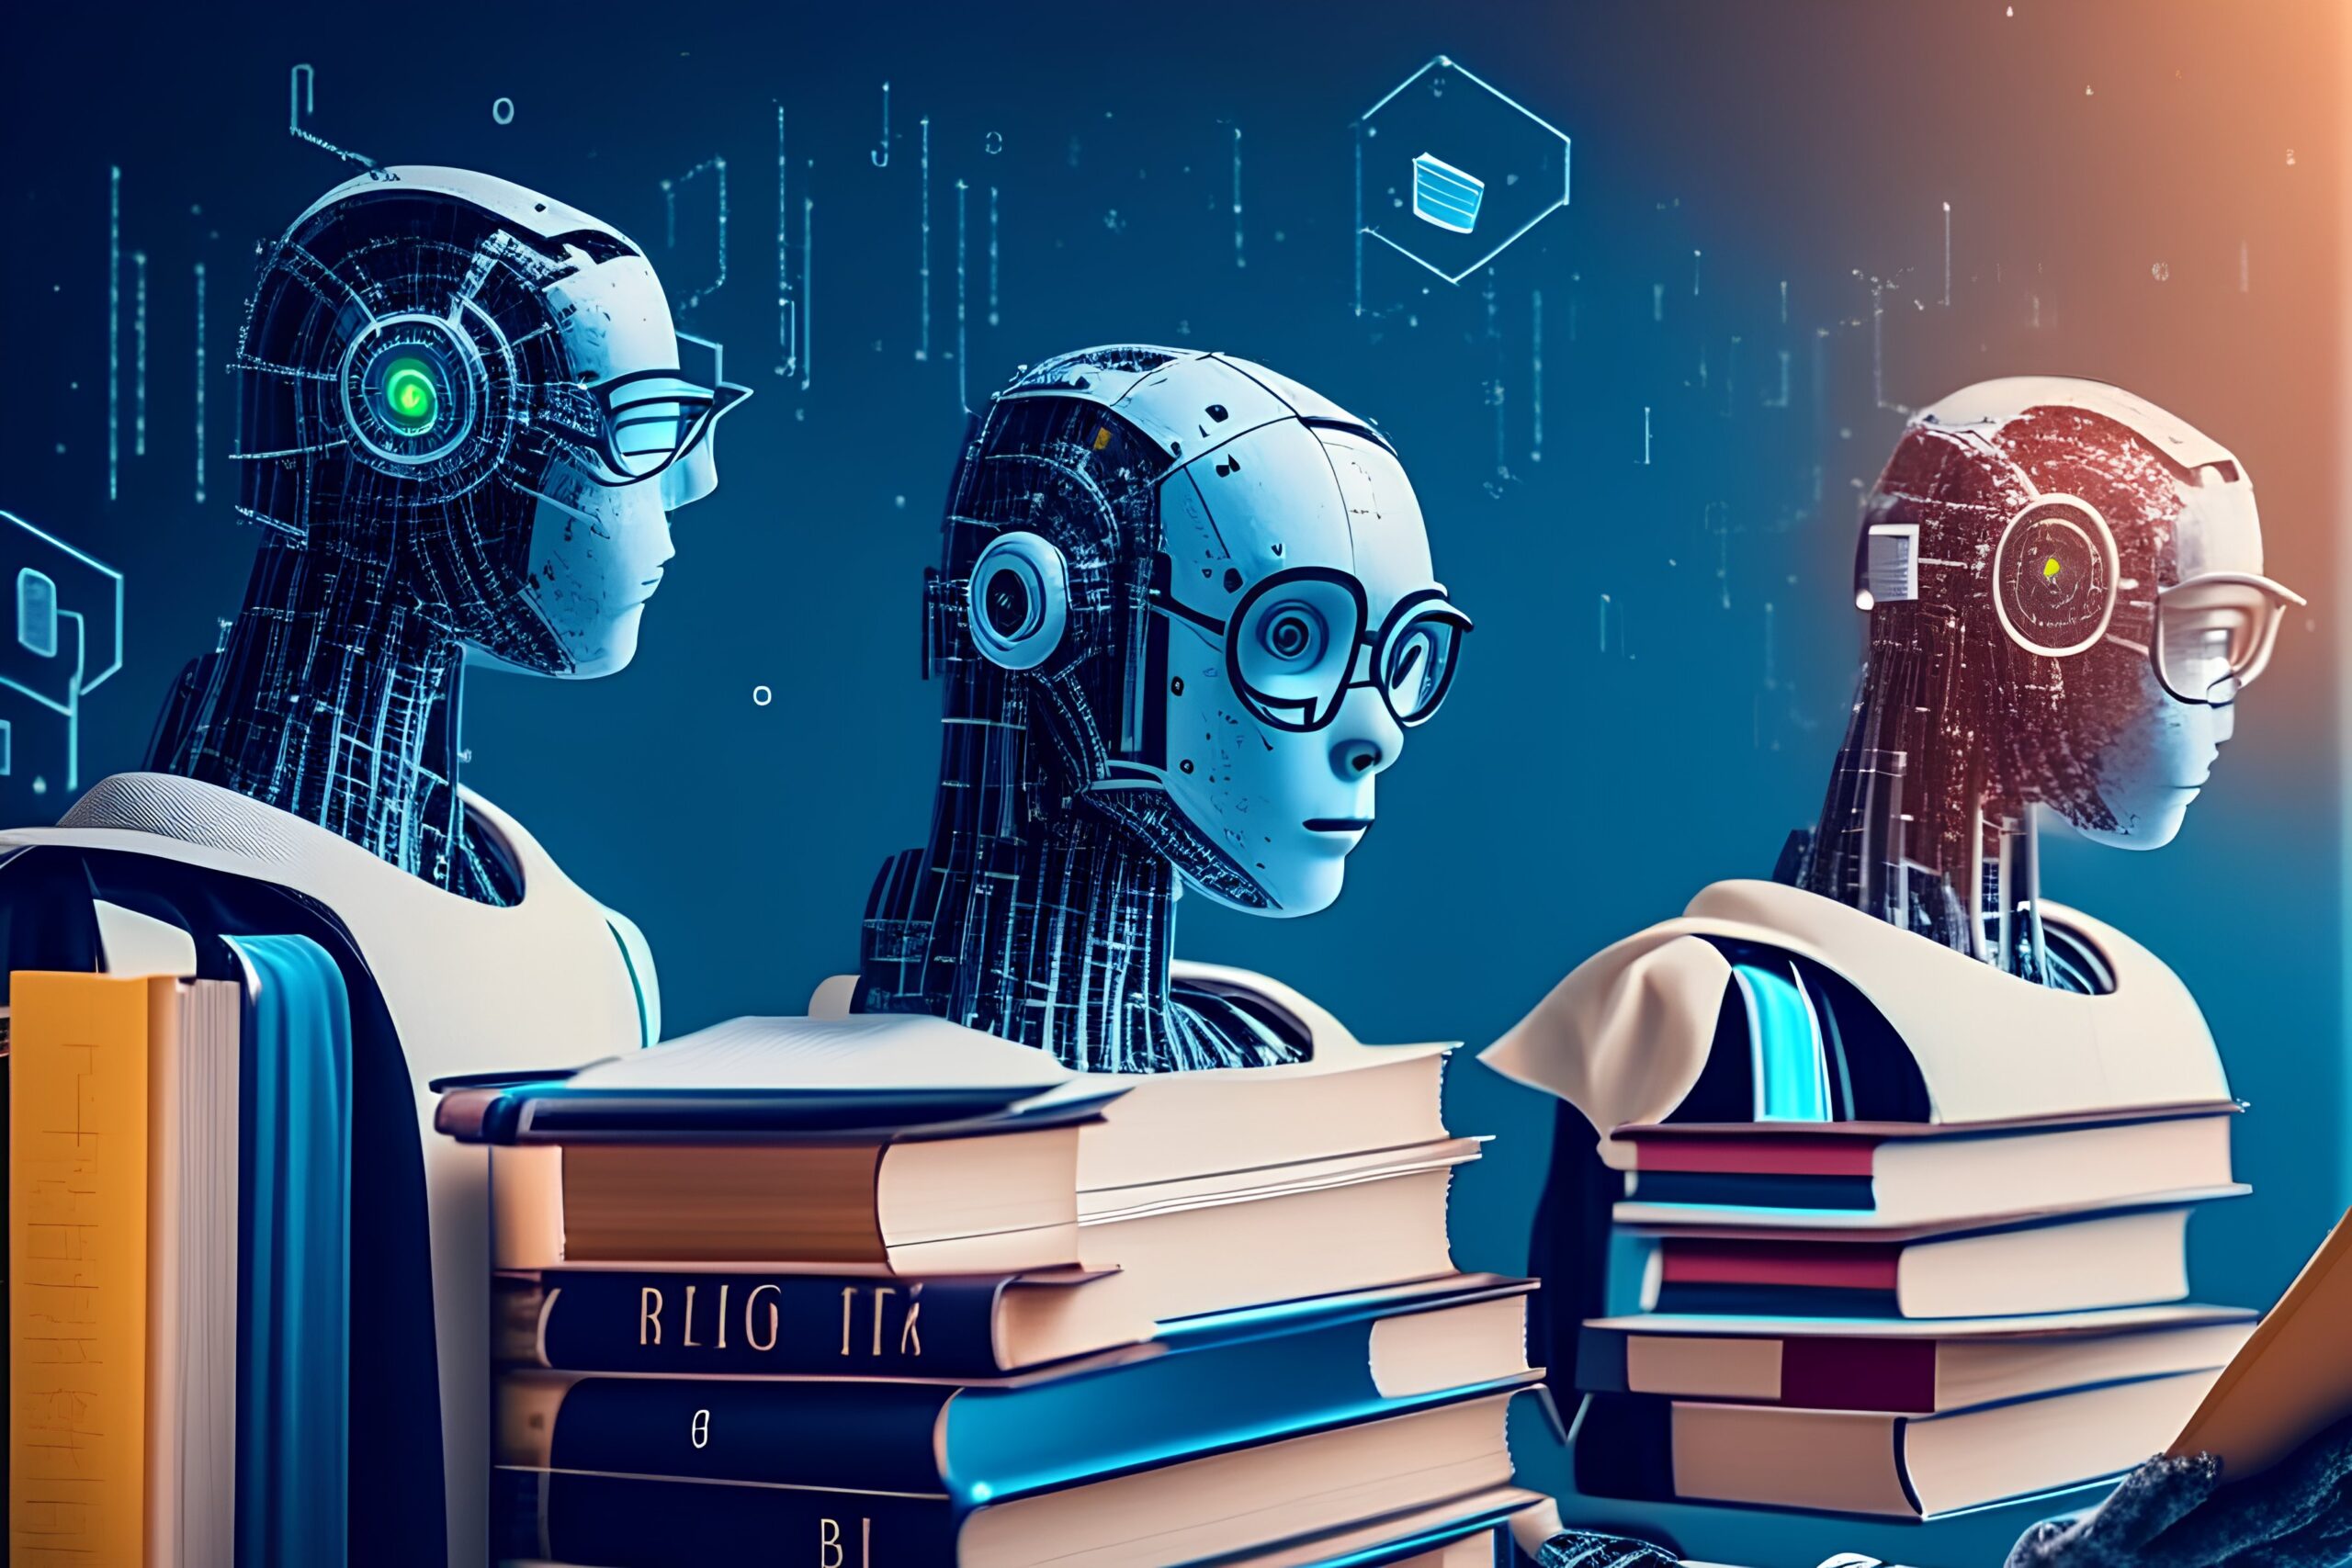 توصيات وخلاصة البحث حول تحسين تجربة المتعلمين باستخدام الذكاء الاصطناعي